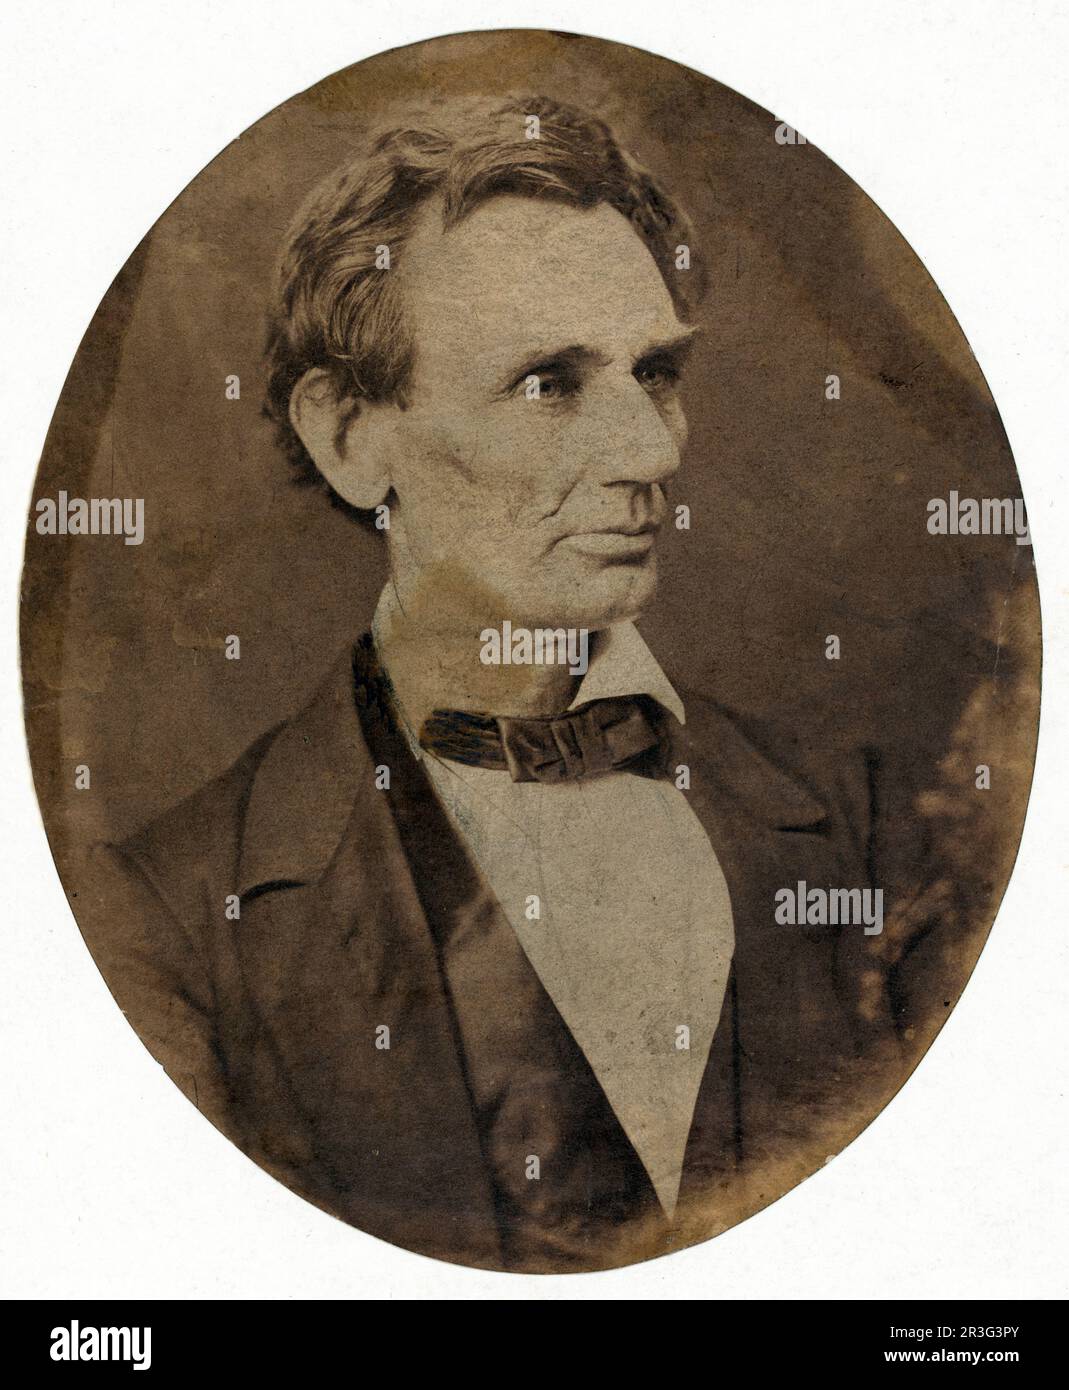 Kopf-und-Schulter-Porträt von Abraham Lincoln, Kandidat für das US-Präsidentenamt, 1860. Stockfoto